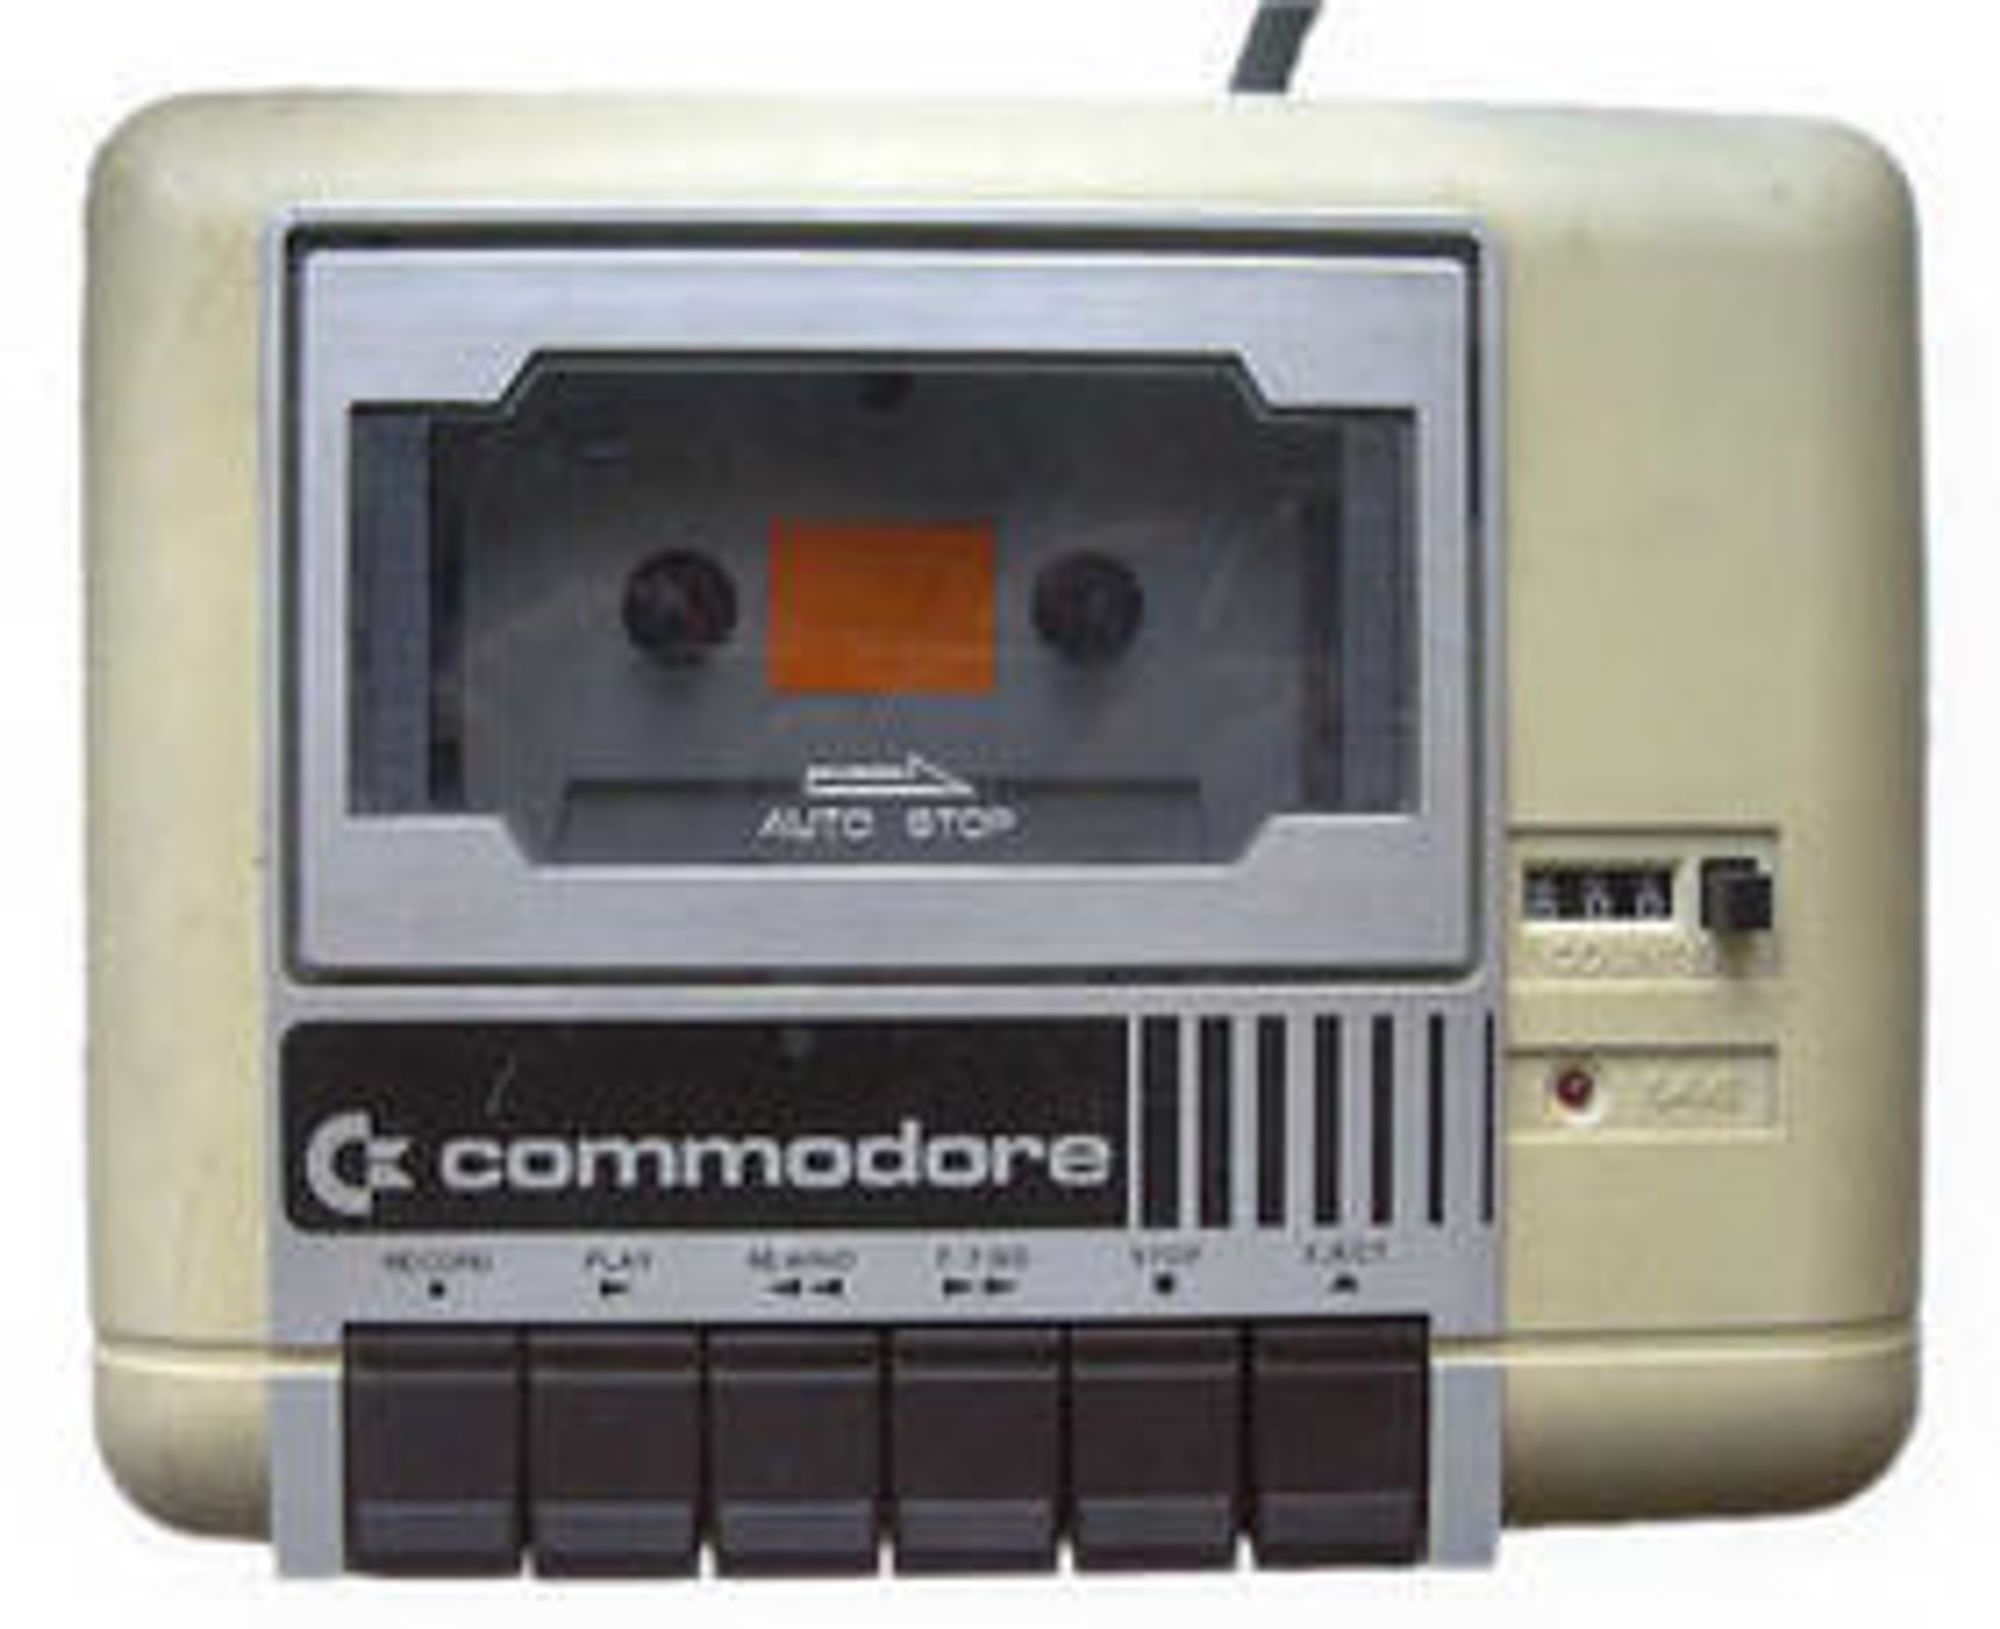 Commodore Datasette 1530, kassettspilleren til Commodore 64. Legg merke til posisjonstelleren. Den var helt nødvendig for å finne fram til programvare som ikke var lagt helt i starten på tapen.